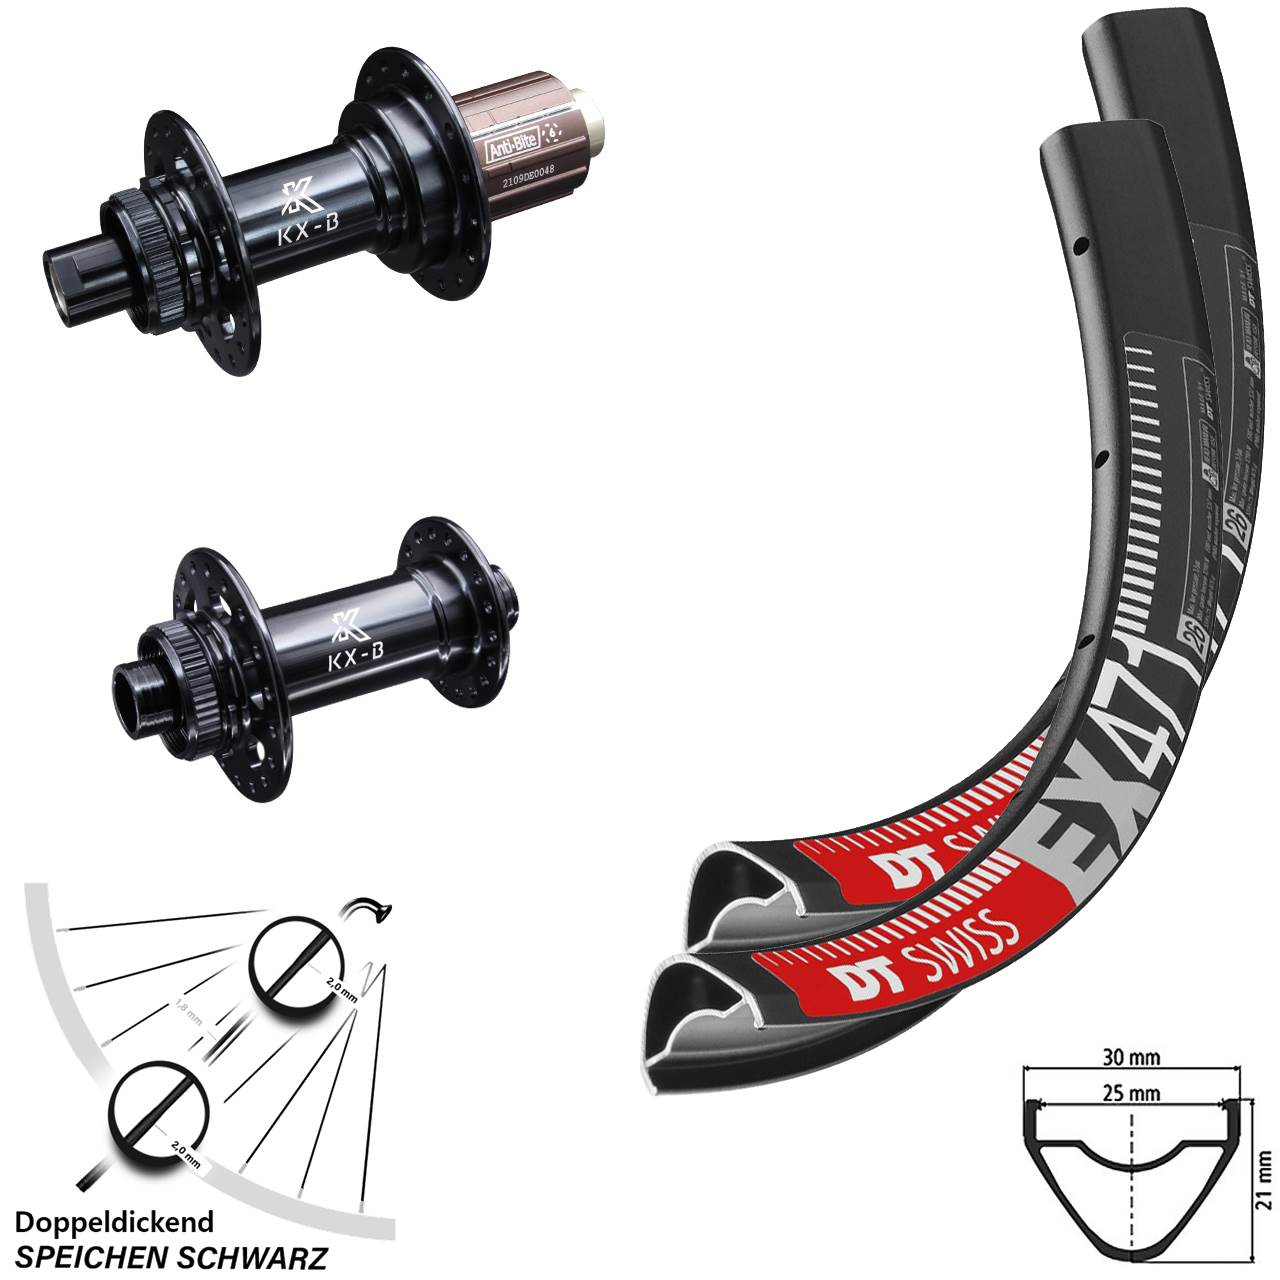 MTB Laufradsatz Enduro 27,5 Zoll Boost DT Swiss EX 471 KX-B Centerlock Shimano 11-fach